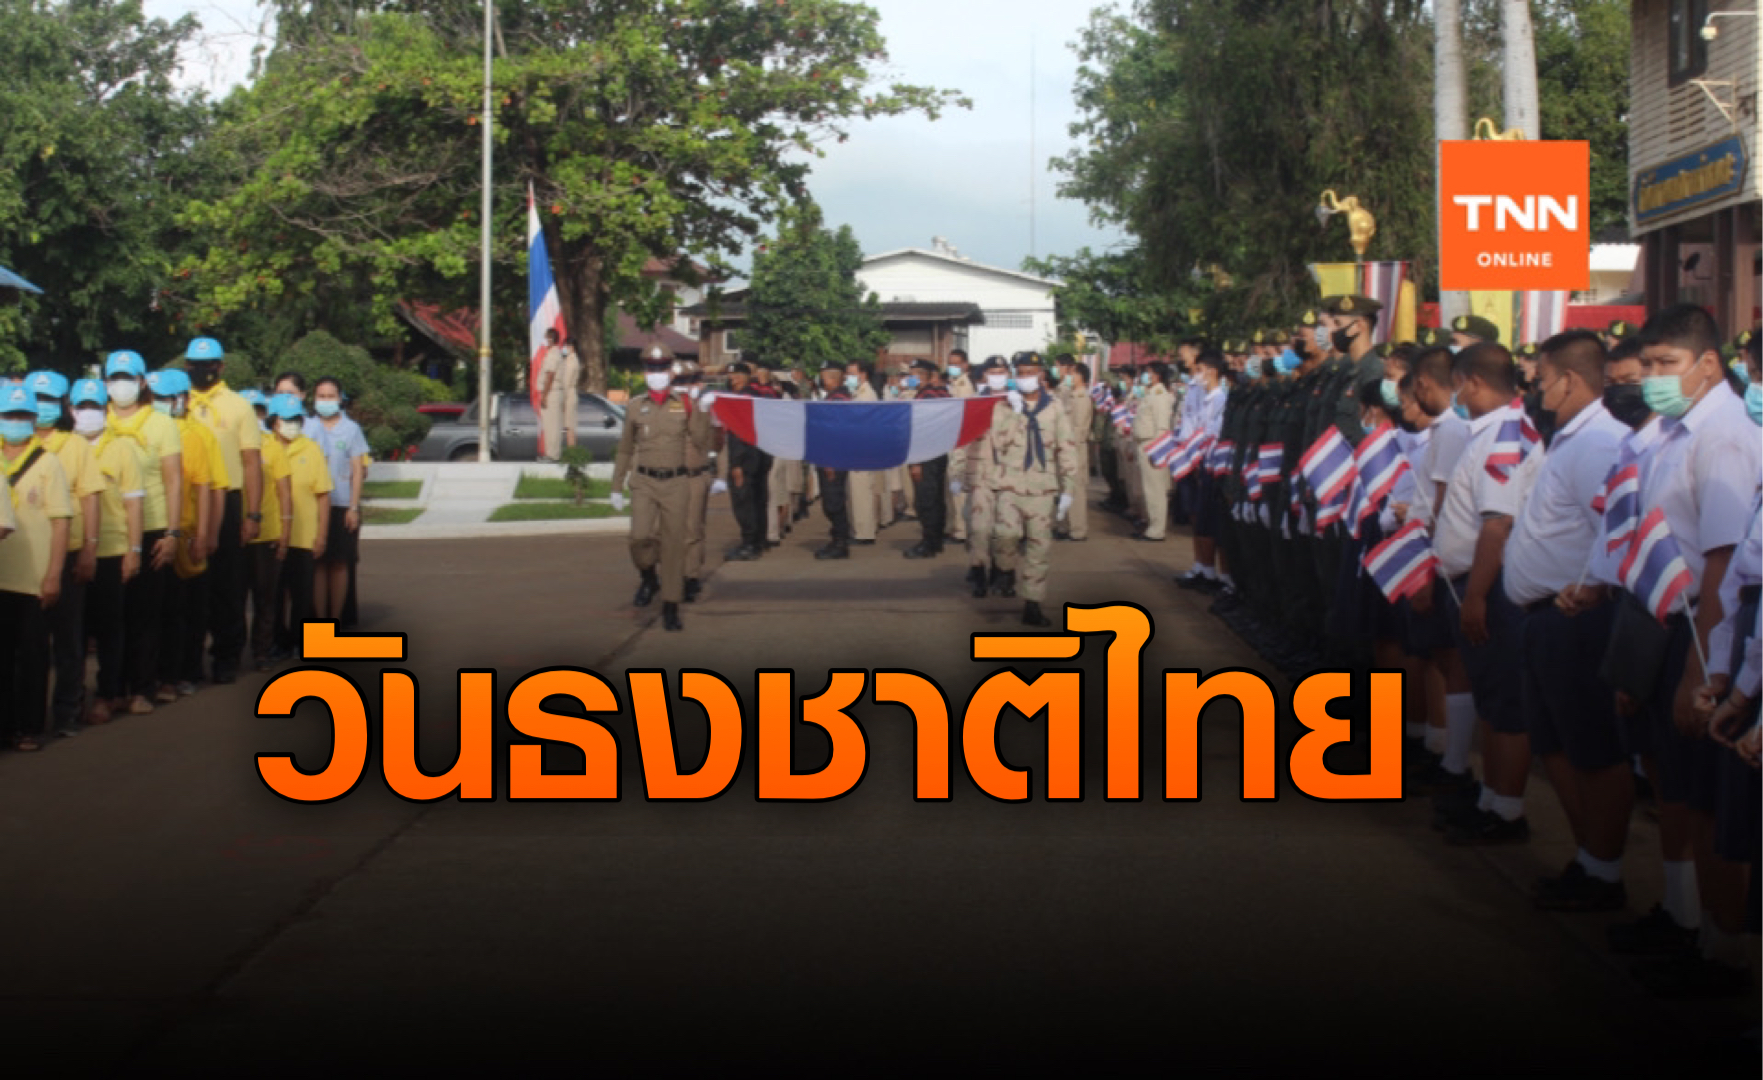 โคราชรวมใจ! ปลูกจิตสำนึก วันพระราชทานธงชาติไทย